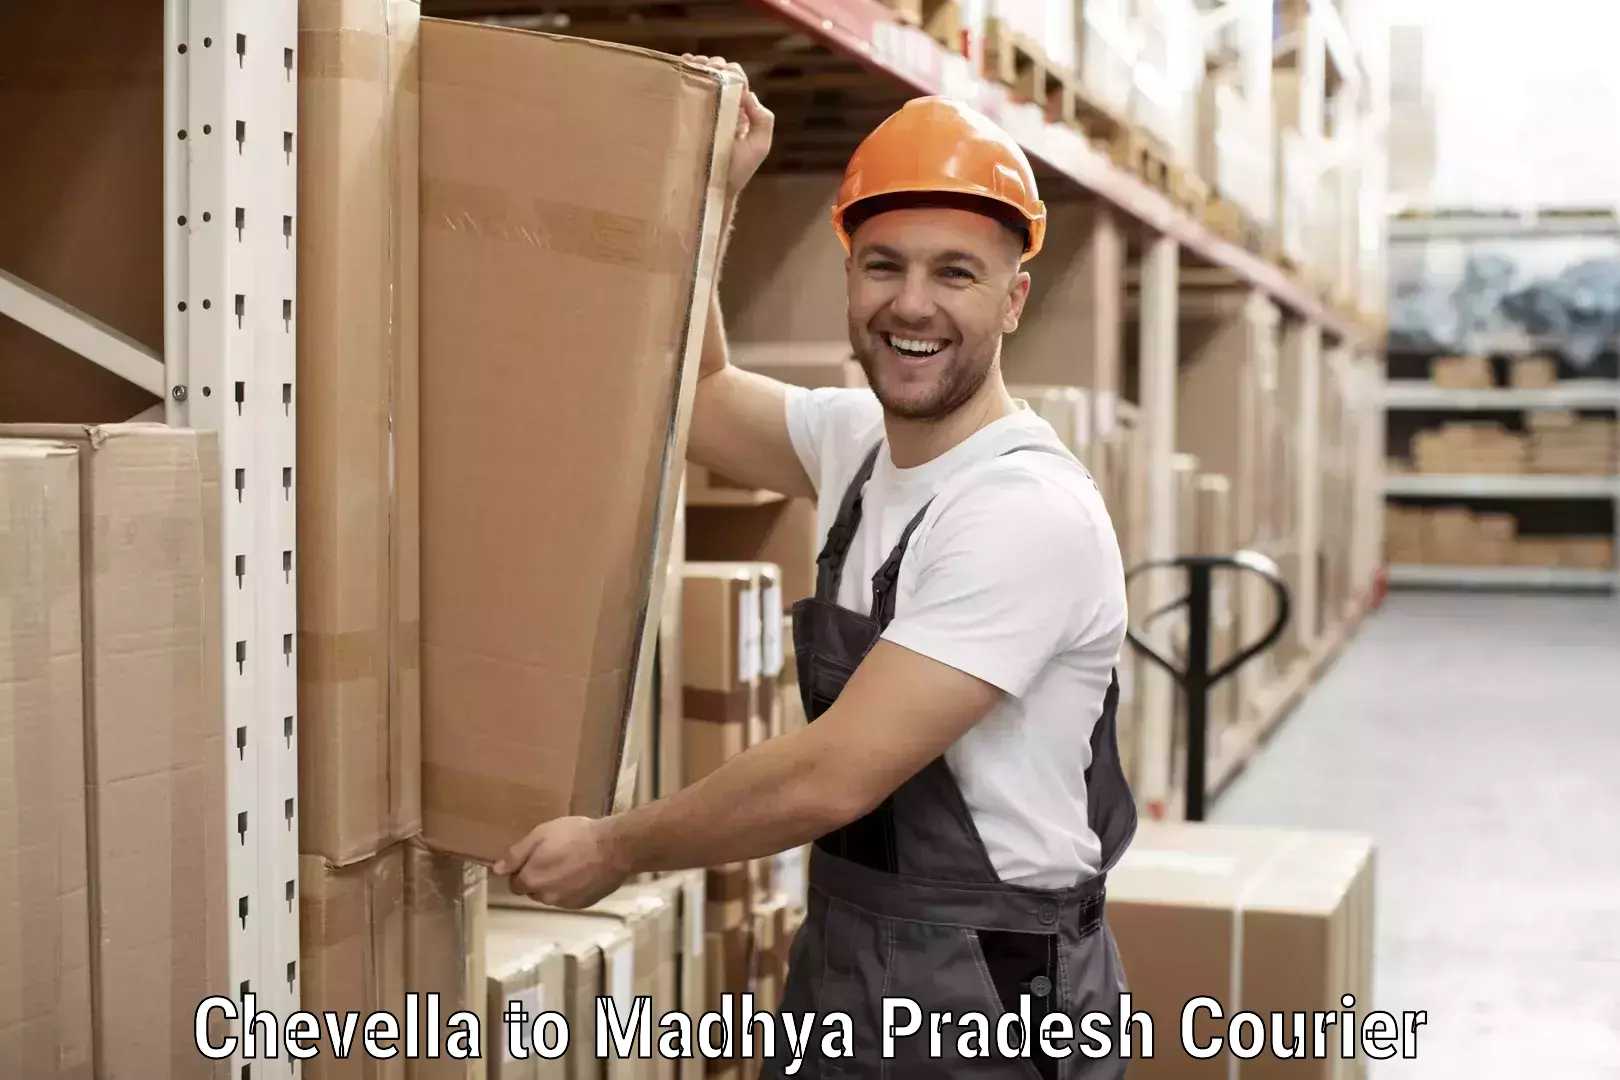 Next-generation courier services Chevella to Amarwara